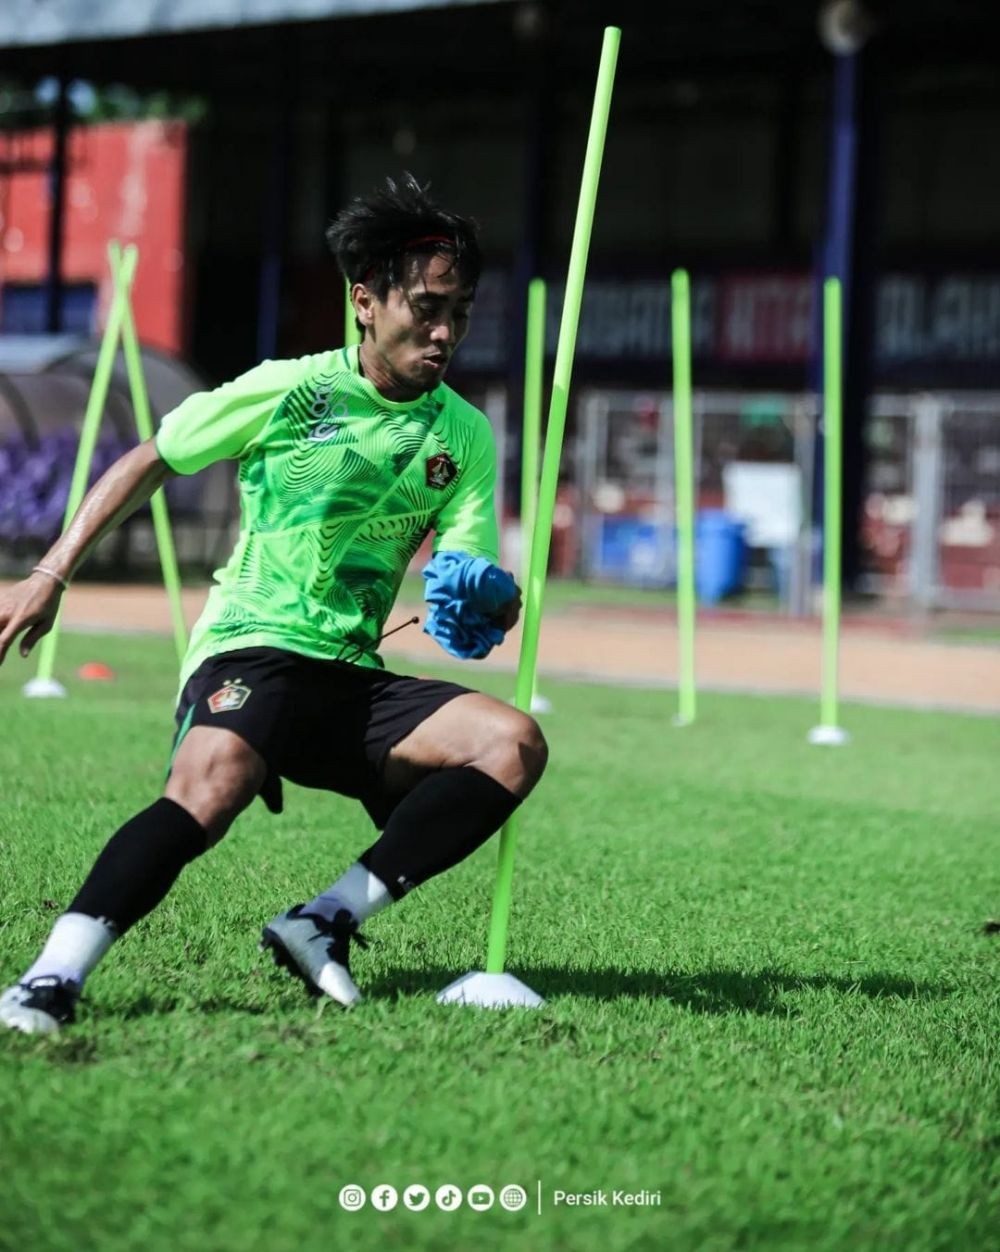 Kebugaran Pemain Menjadi PR Persik Kediri Saat Hadapi Persib Bandung